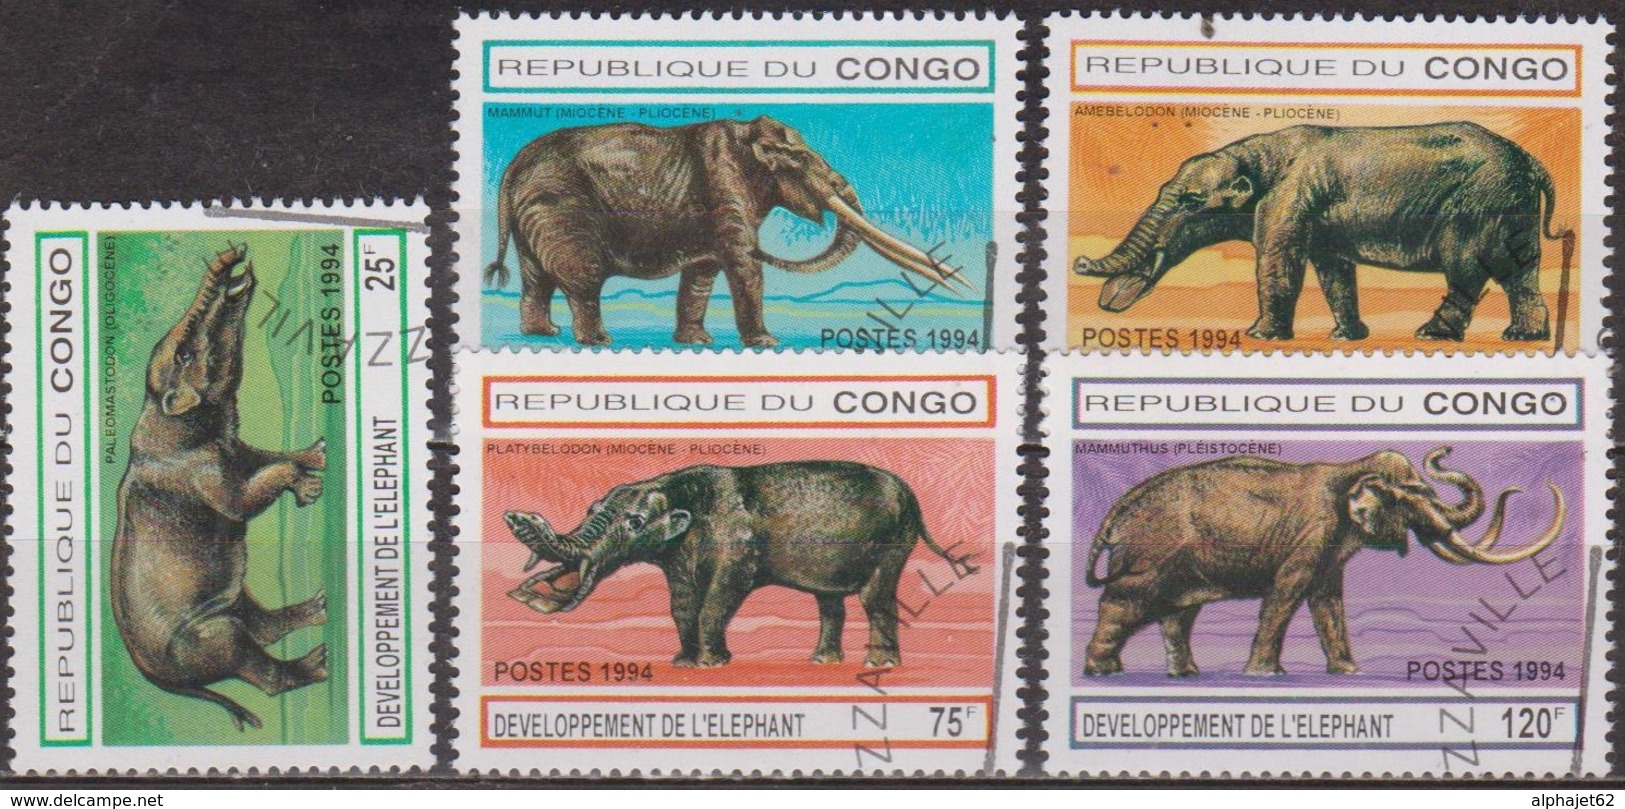 Animaux Préhistoriques - CONGO - Développement De L'éléphant Au Cours Des Ages - N° 990a à 990d - 1994 - Oblitérés